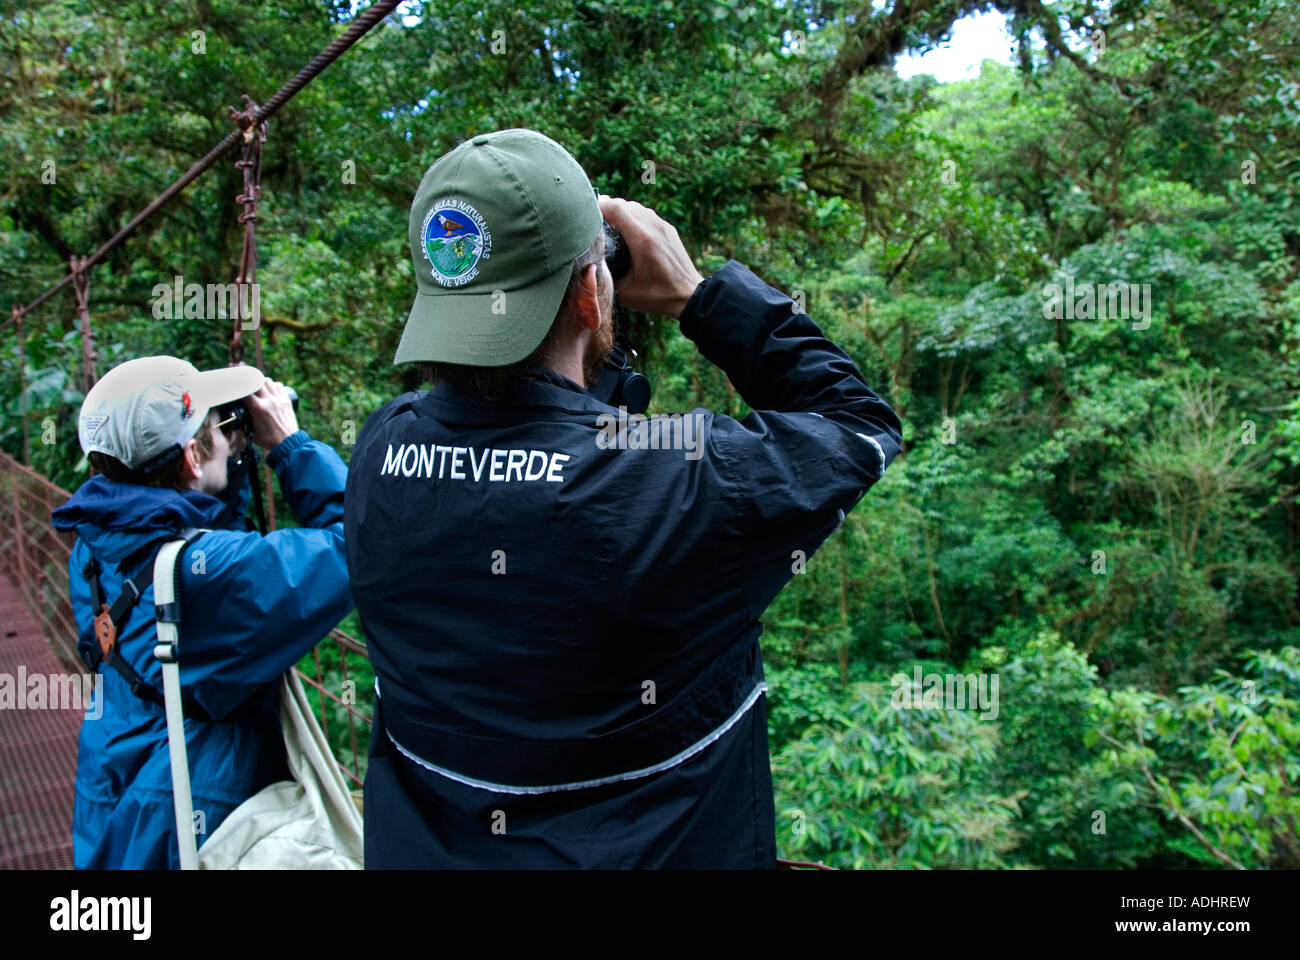 L'observation des oiseaux de Monteverde Cloud Forest Preserve. Province de Puntarenas, Costa Rica. L'Amérique centrale Banque D'Images